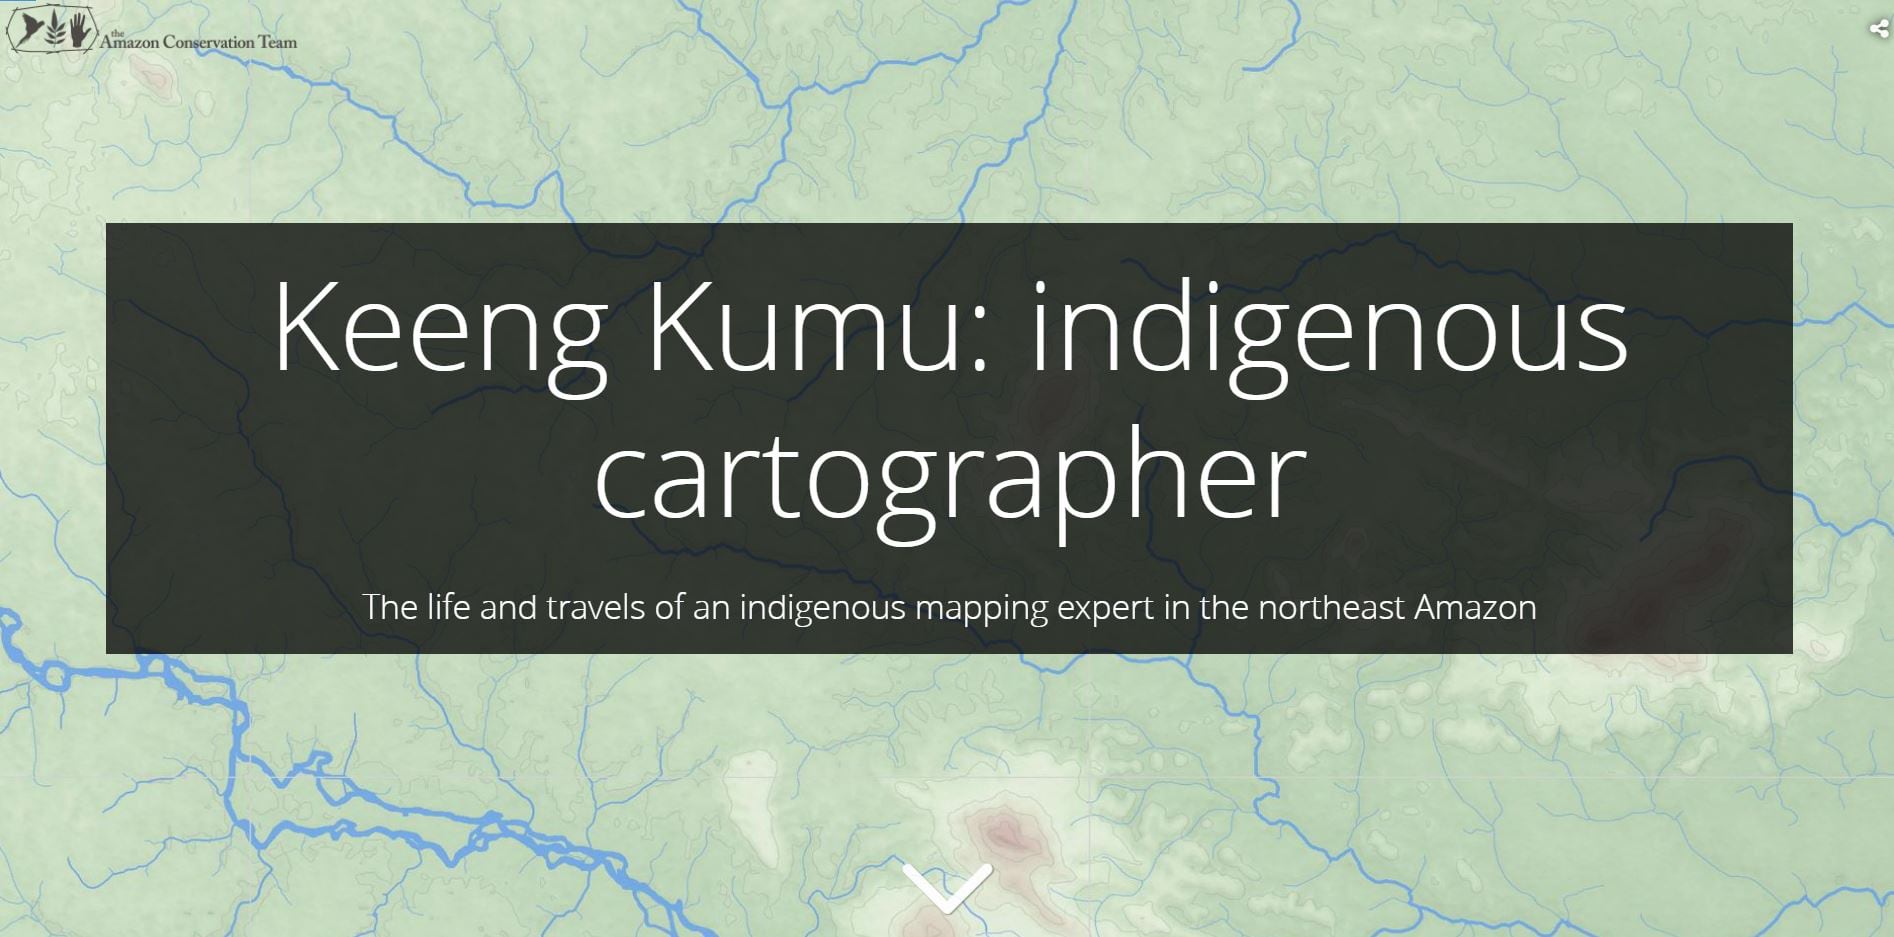 View the Keeng Kumu: indigenous cartographer story.